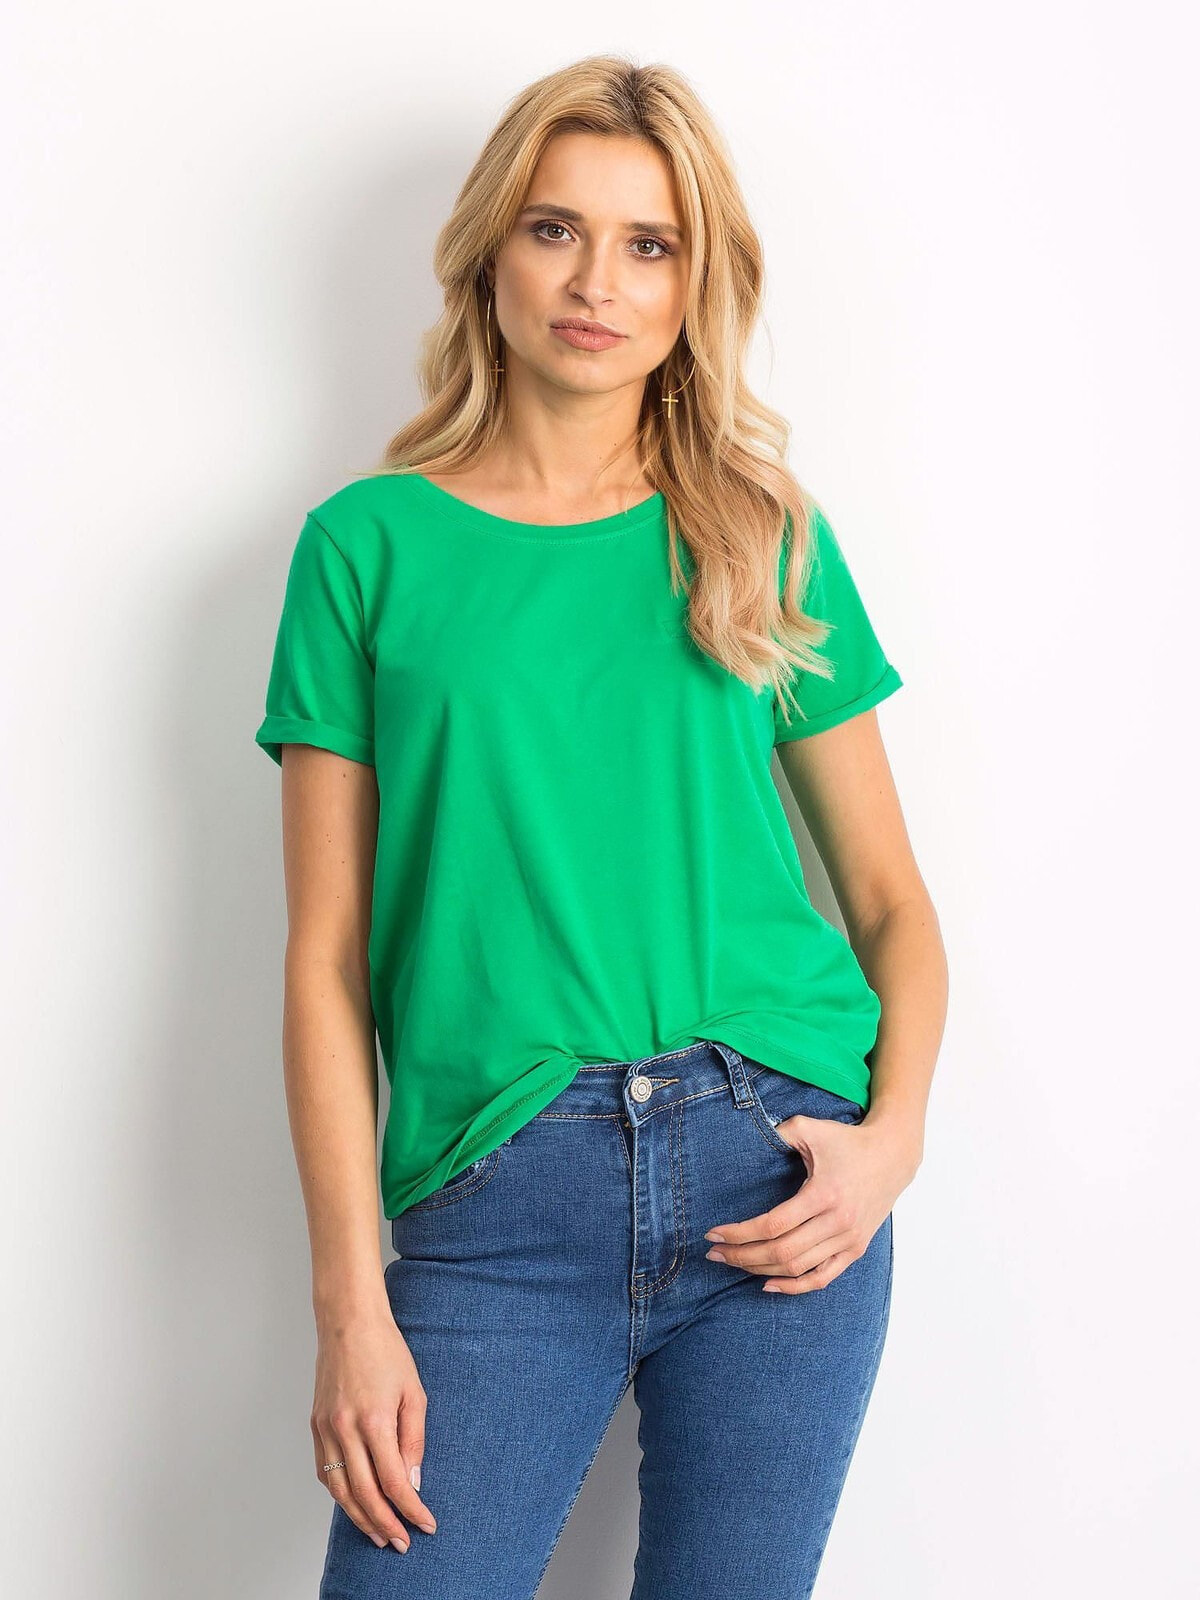 Женская футболка свободного кроя зеленая Factory Price